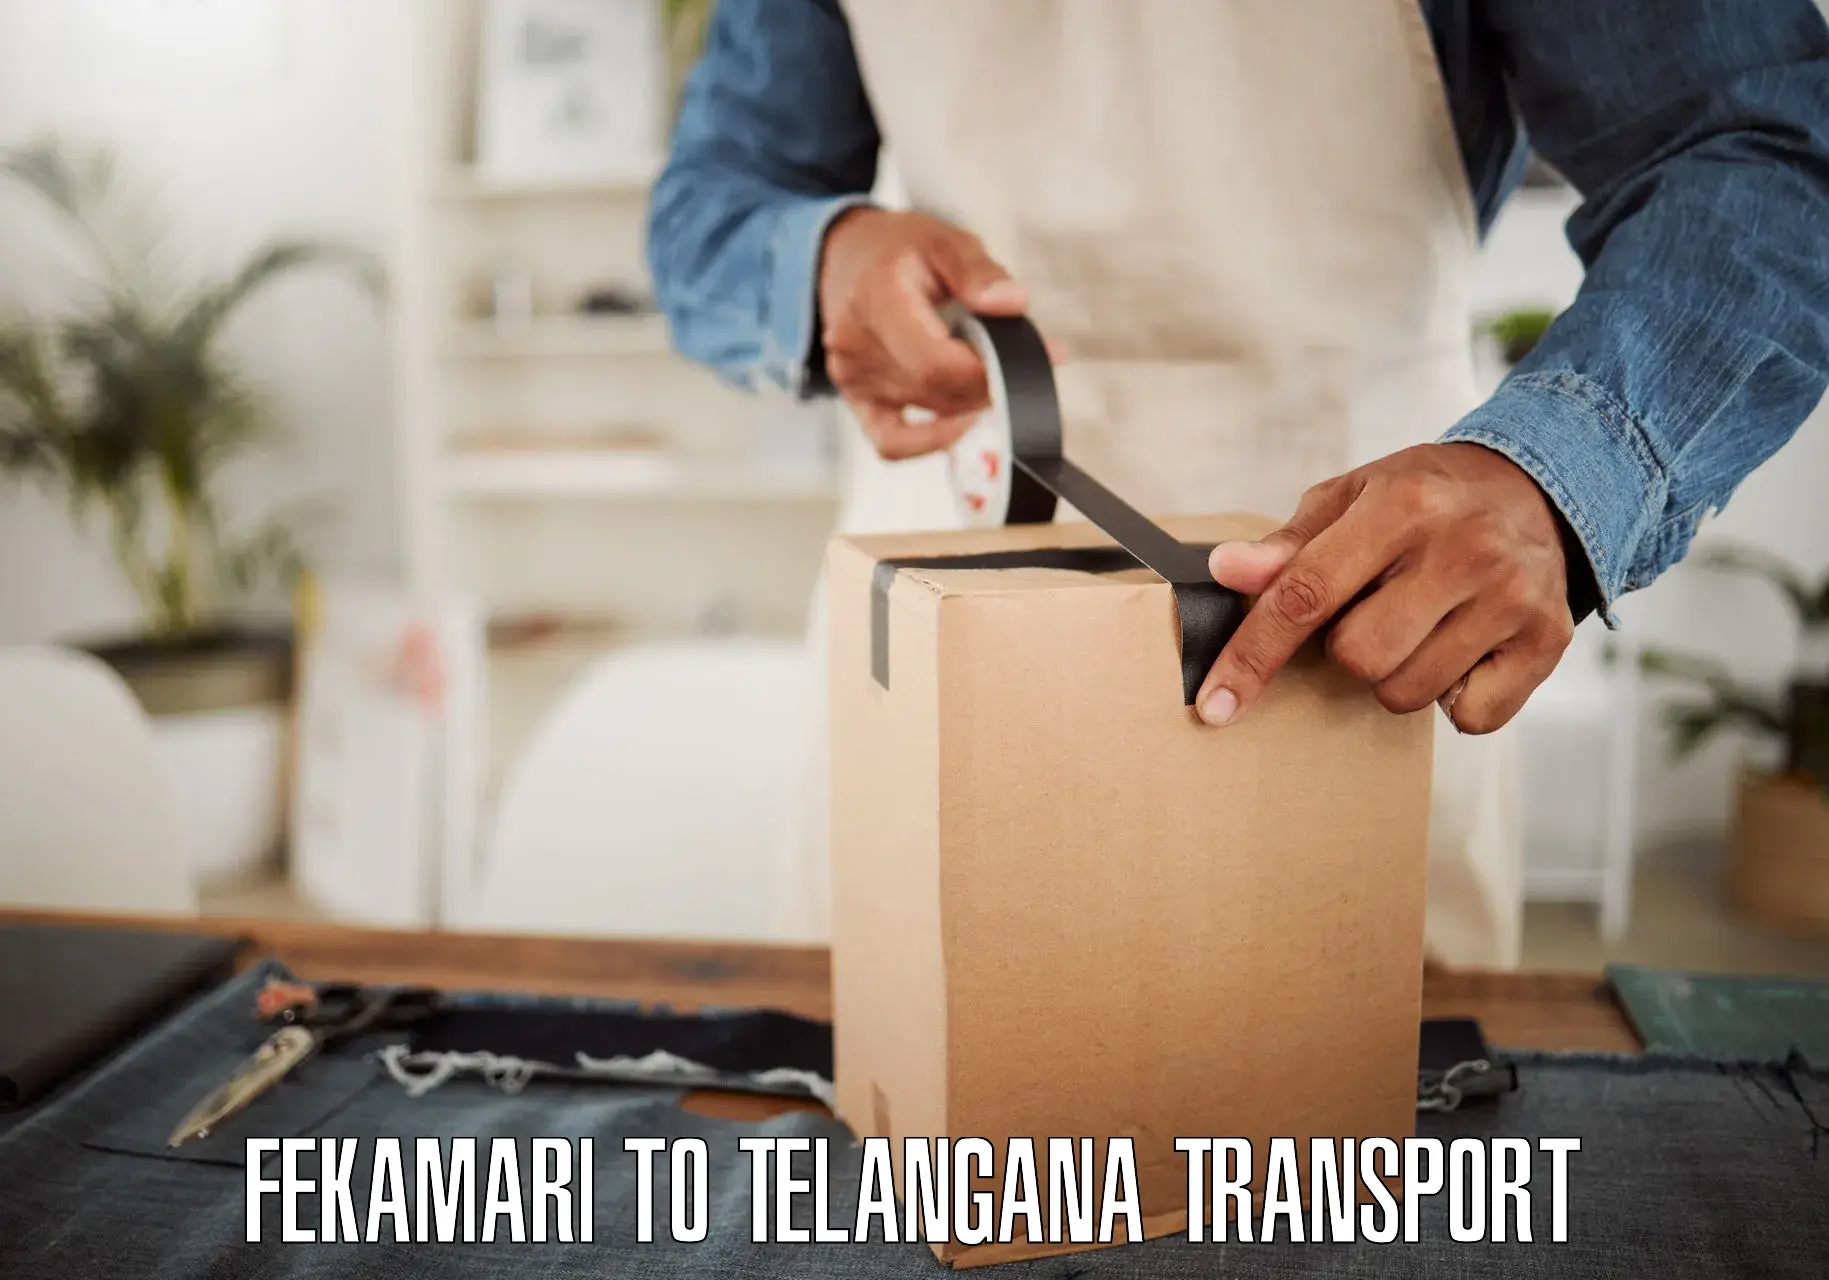 Transport in sharing Fekamari to Tallada